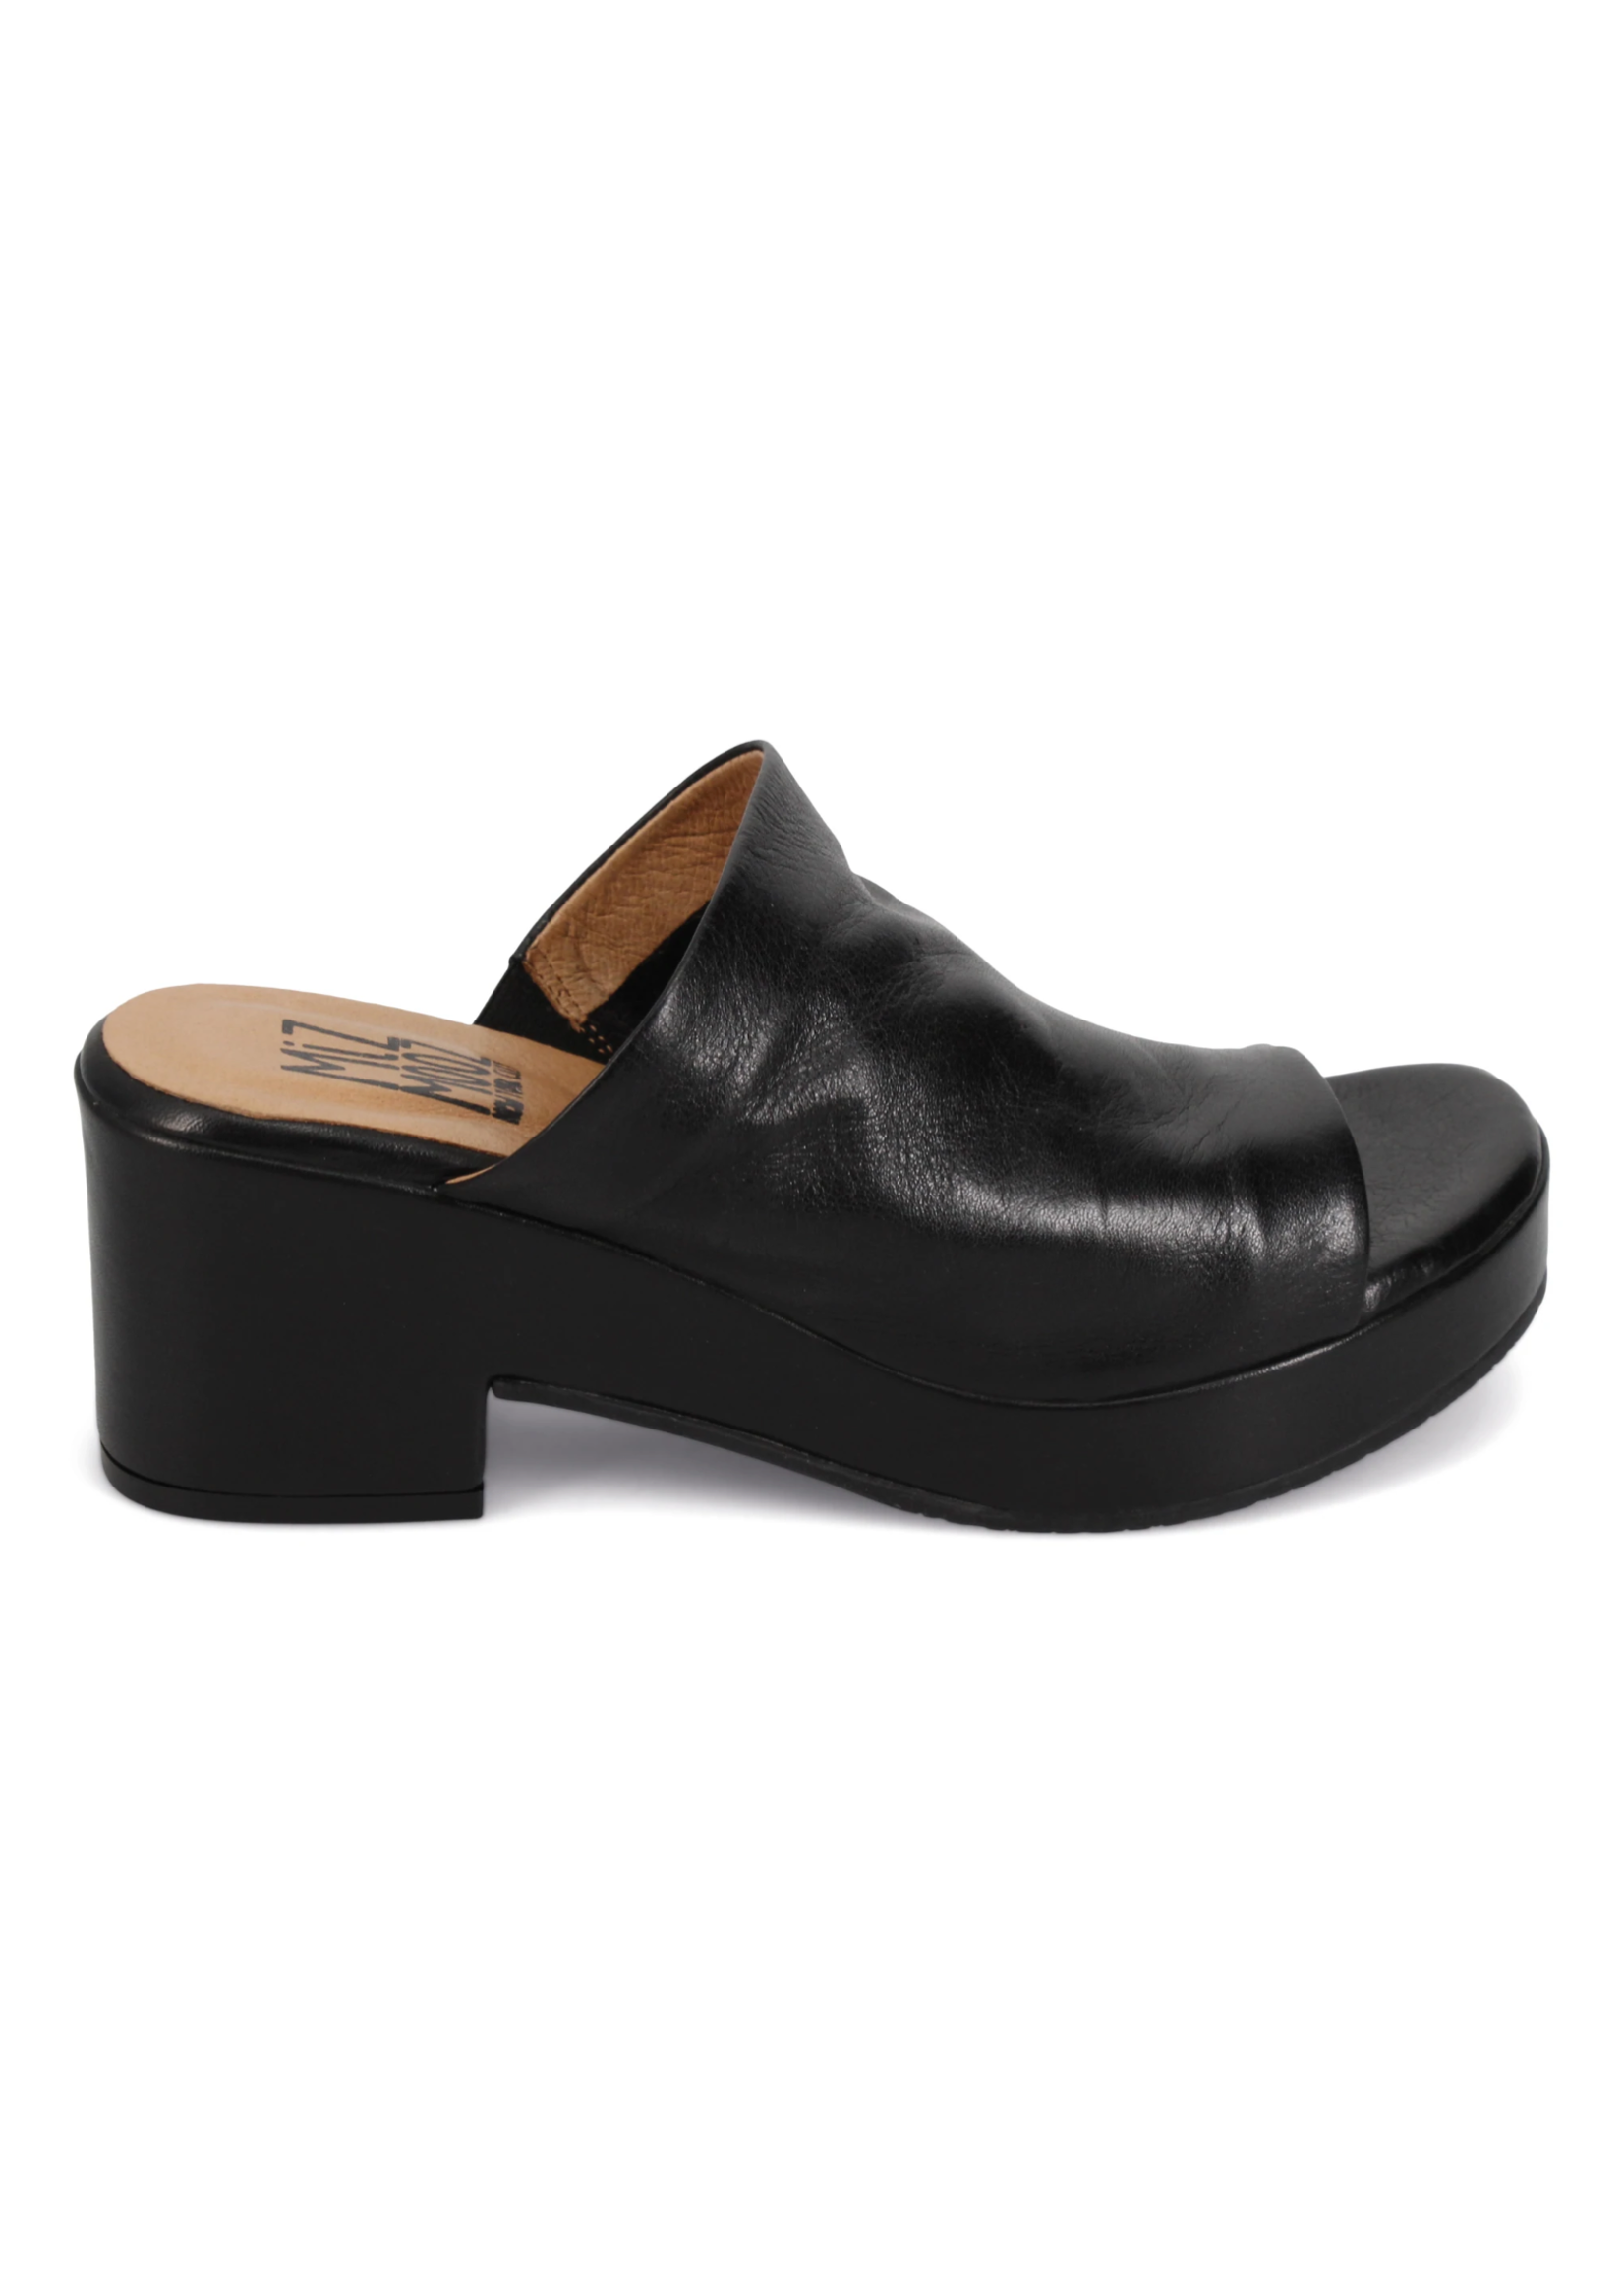 Miz Mooz Gwen Platform Sandals - Black